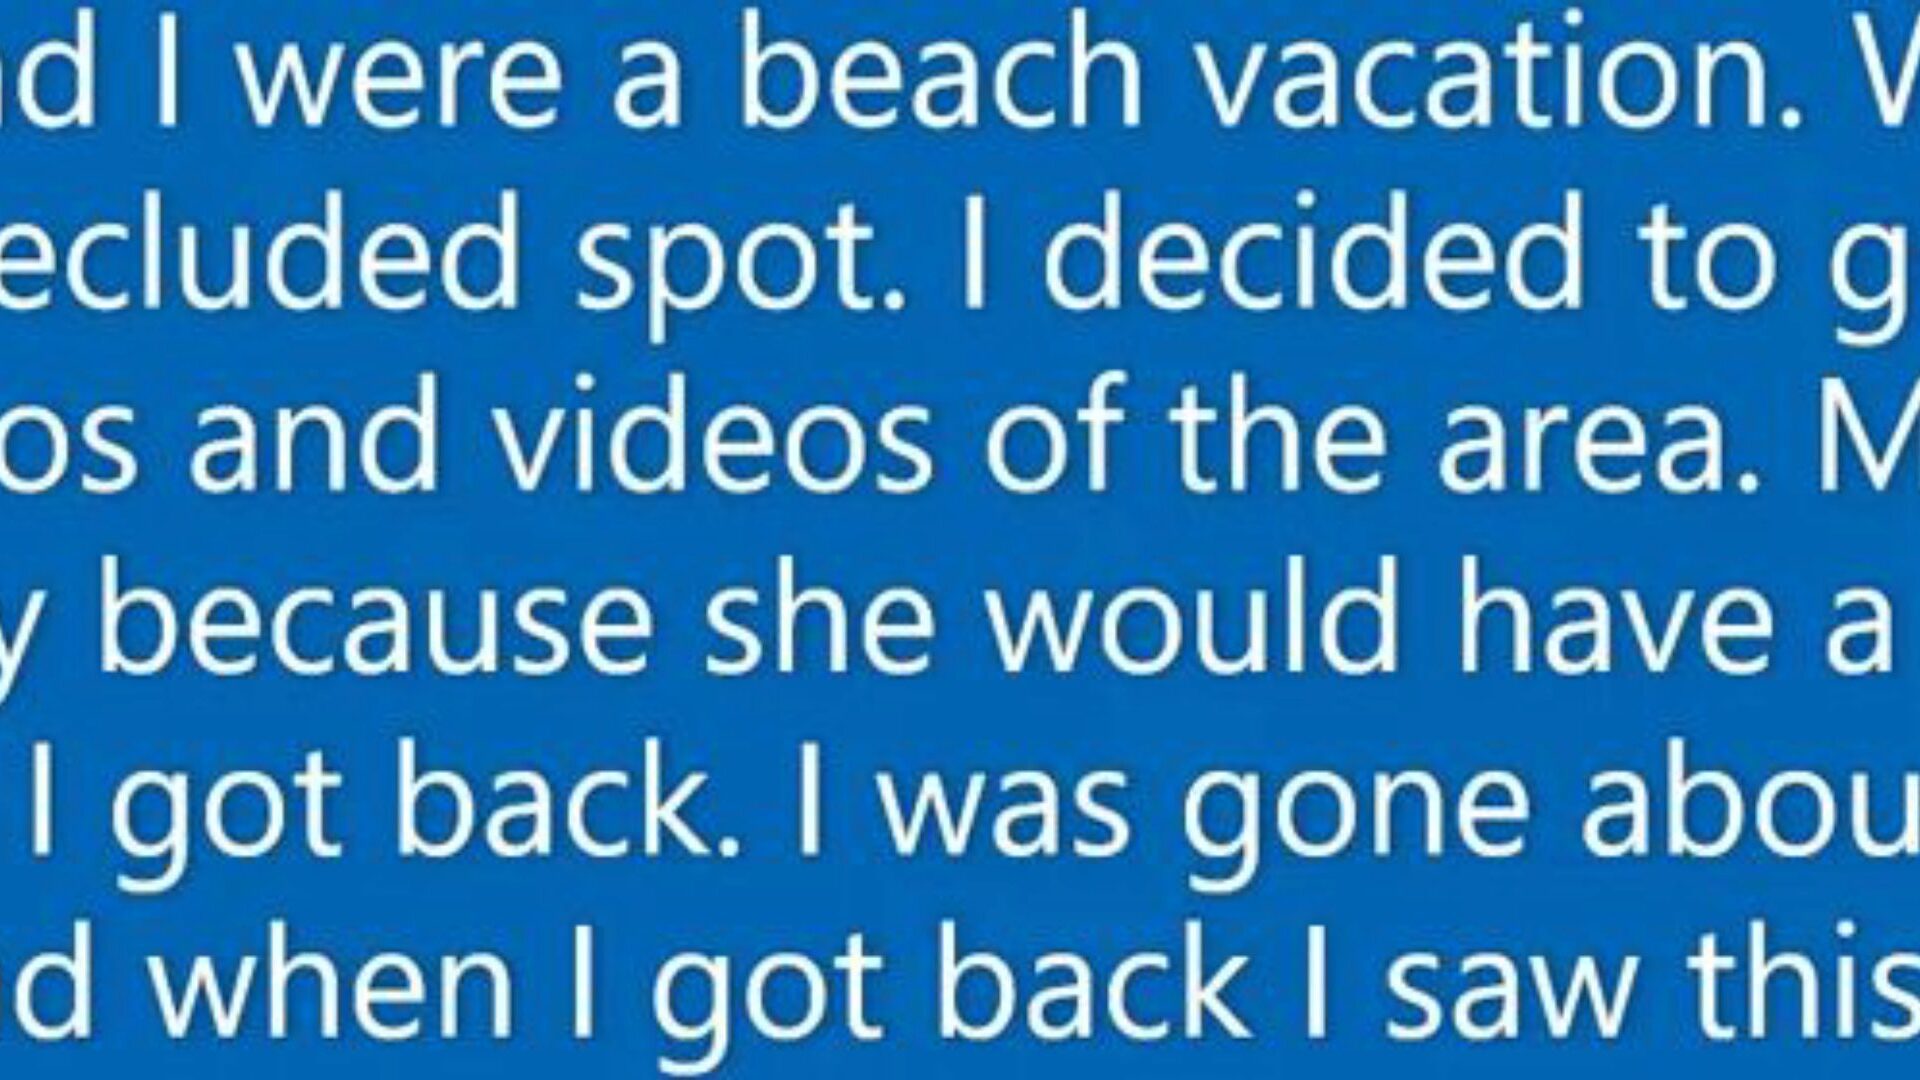 vrouw inhaleert vreemdeling staaf op strandvakantie